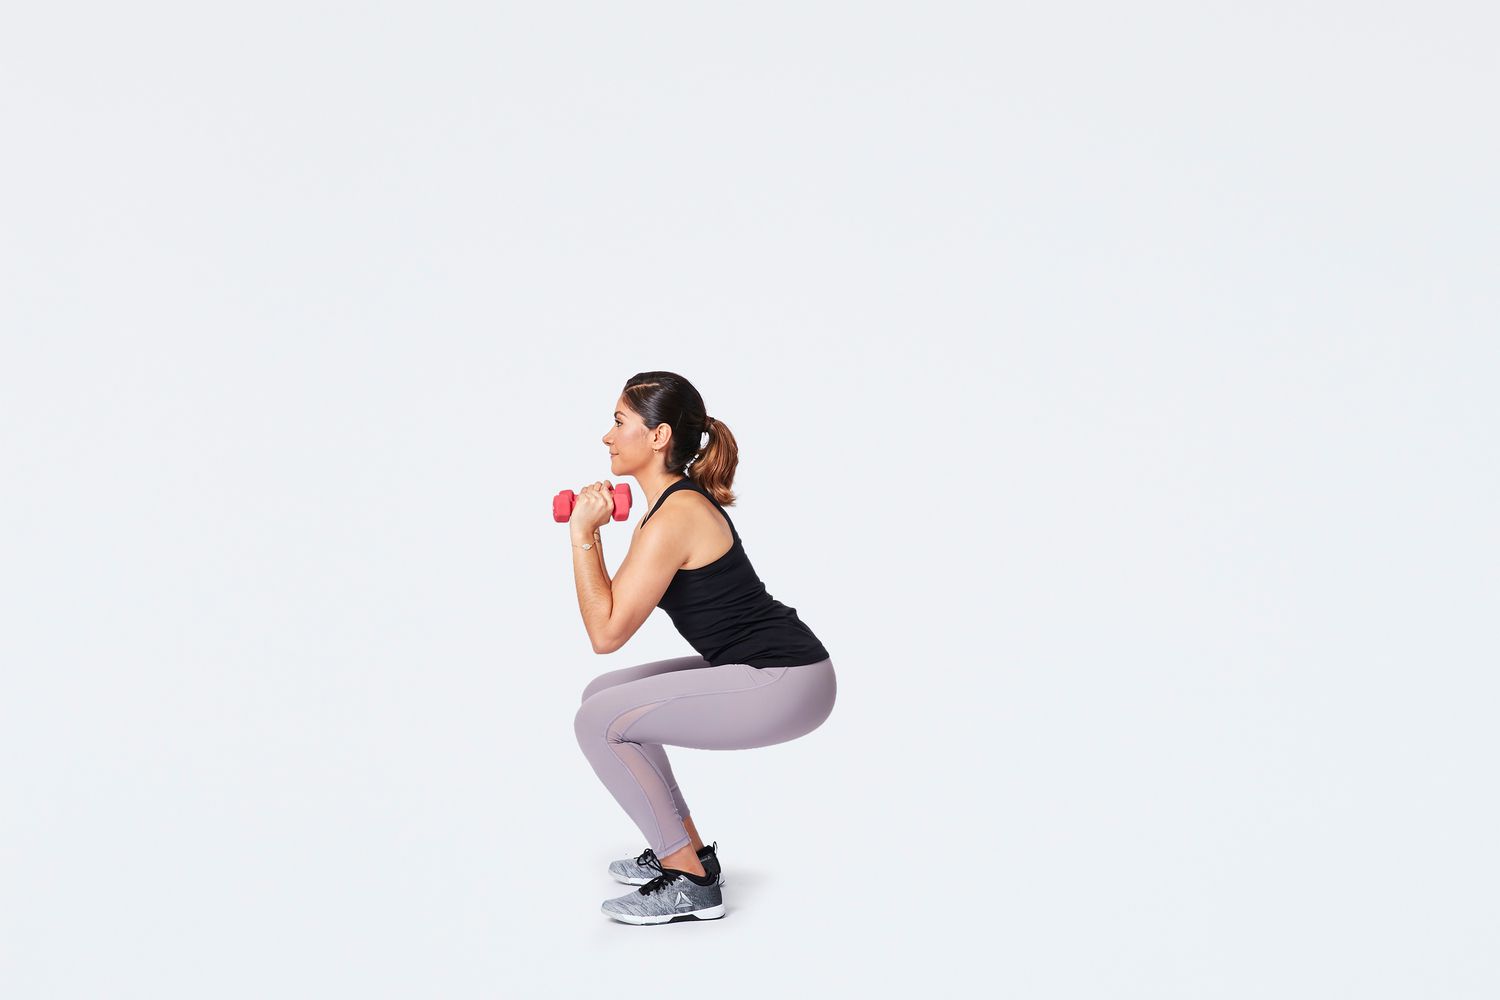 Vrouw die een dumbbell schouder squat uitvoert